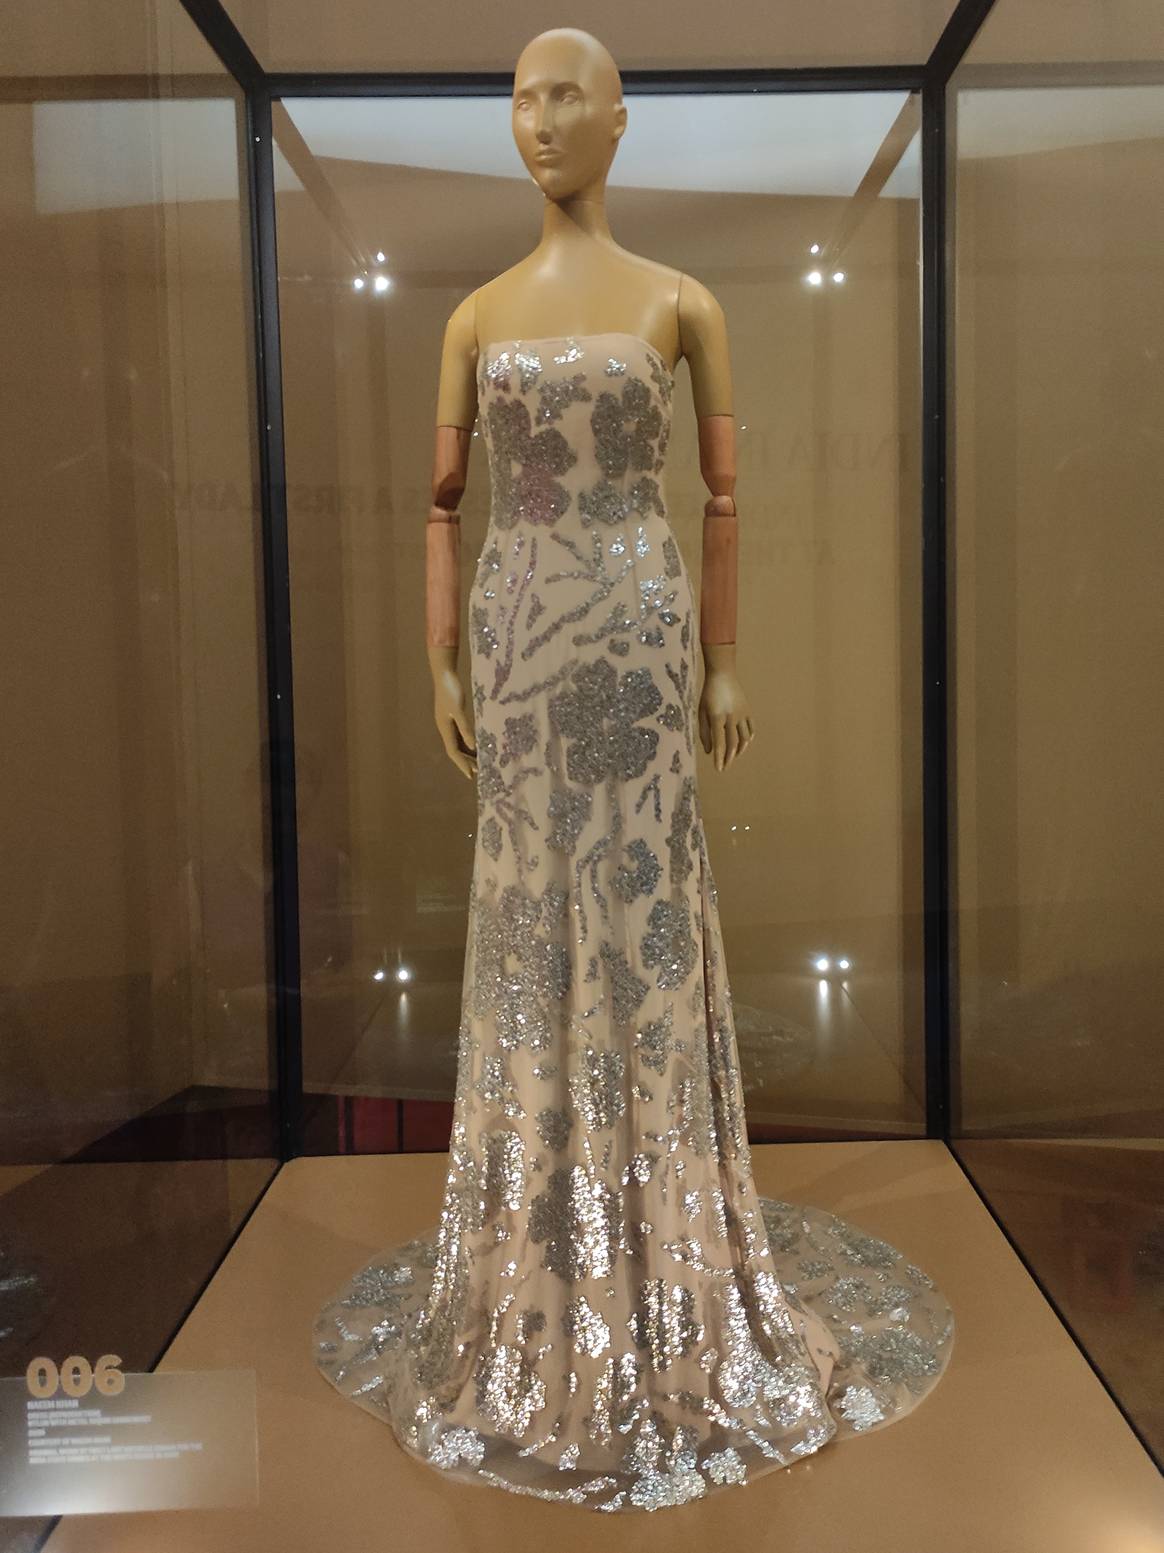 Das Taeem Khan-Kleid aus der Nähe. Bild: Sumit Suryawanshi für FashionUnited